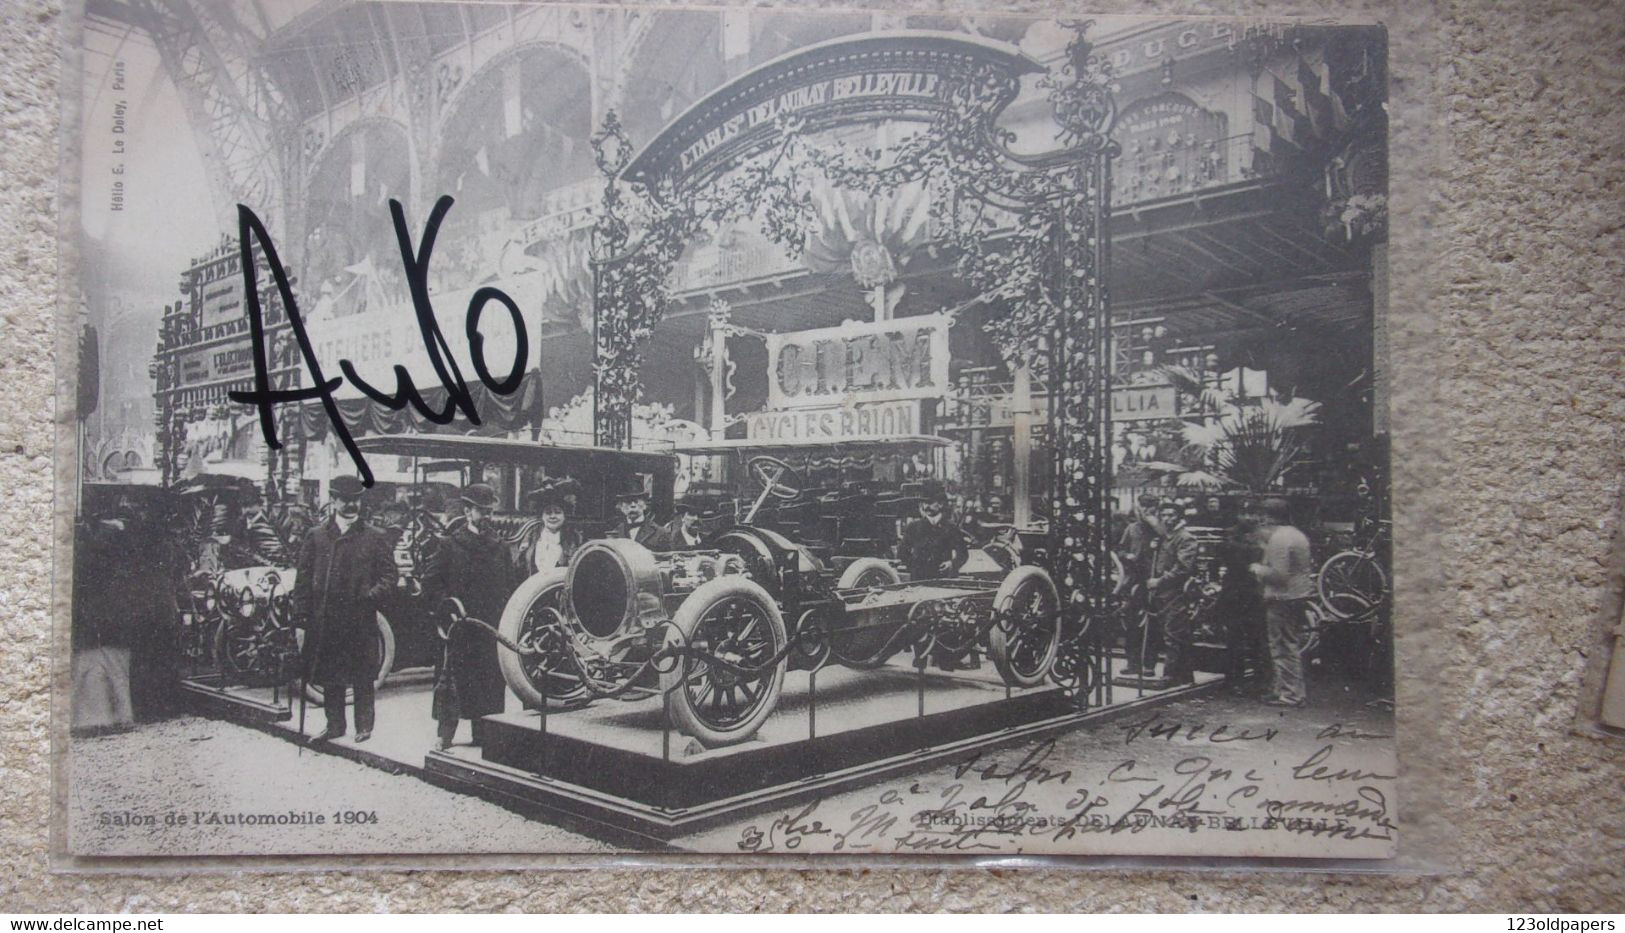 ♥️ SALON DE L AUTOMOBILE 1904 DELAUNAY BELLEVILLE CIEM CYCLES BRION - Passenger Cars